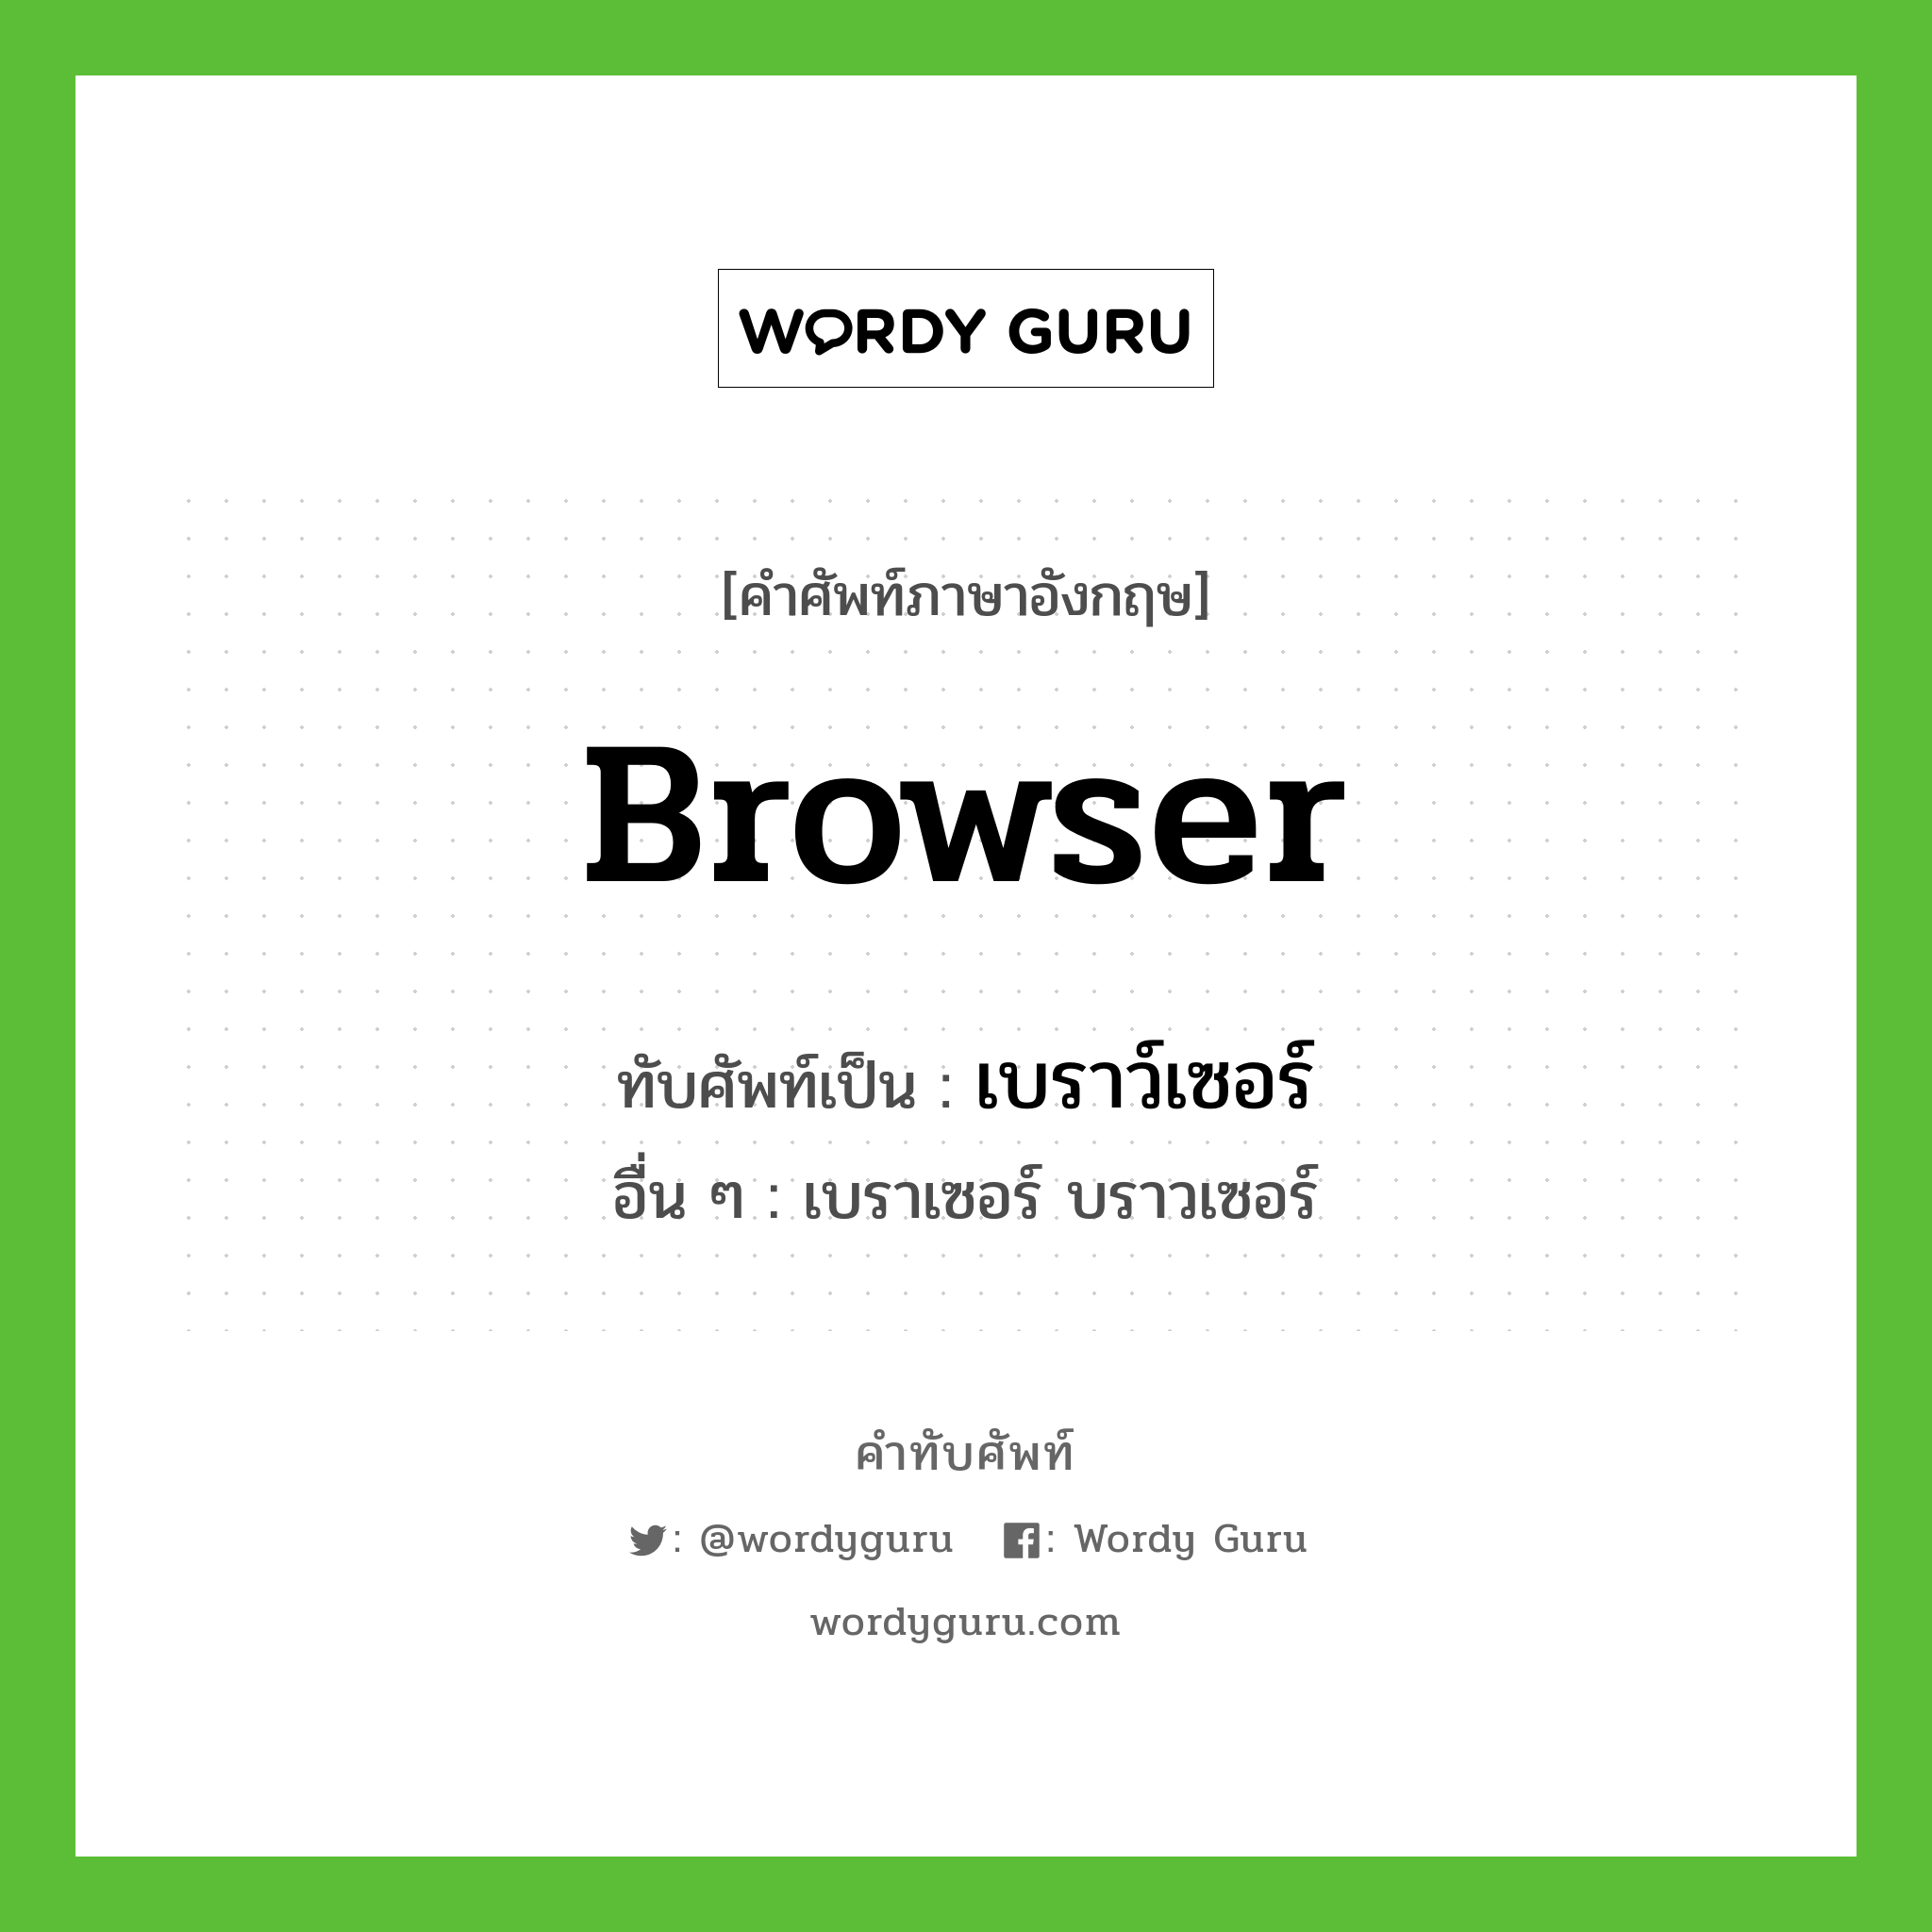 browser เขียนเป็นคำไทยว่าอะไร?, คำศัพท์ภาษาอังกฤษ browser ทับศัพท์เป็น เบราว์เซอร์ อื่น ๆ เบราเซอร์ บราวเซอร์